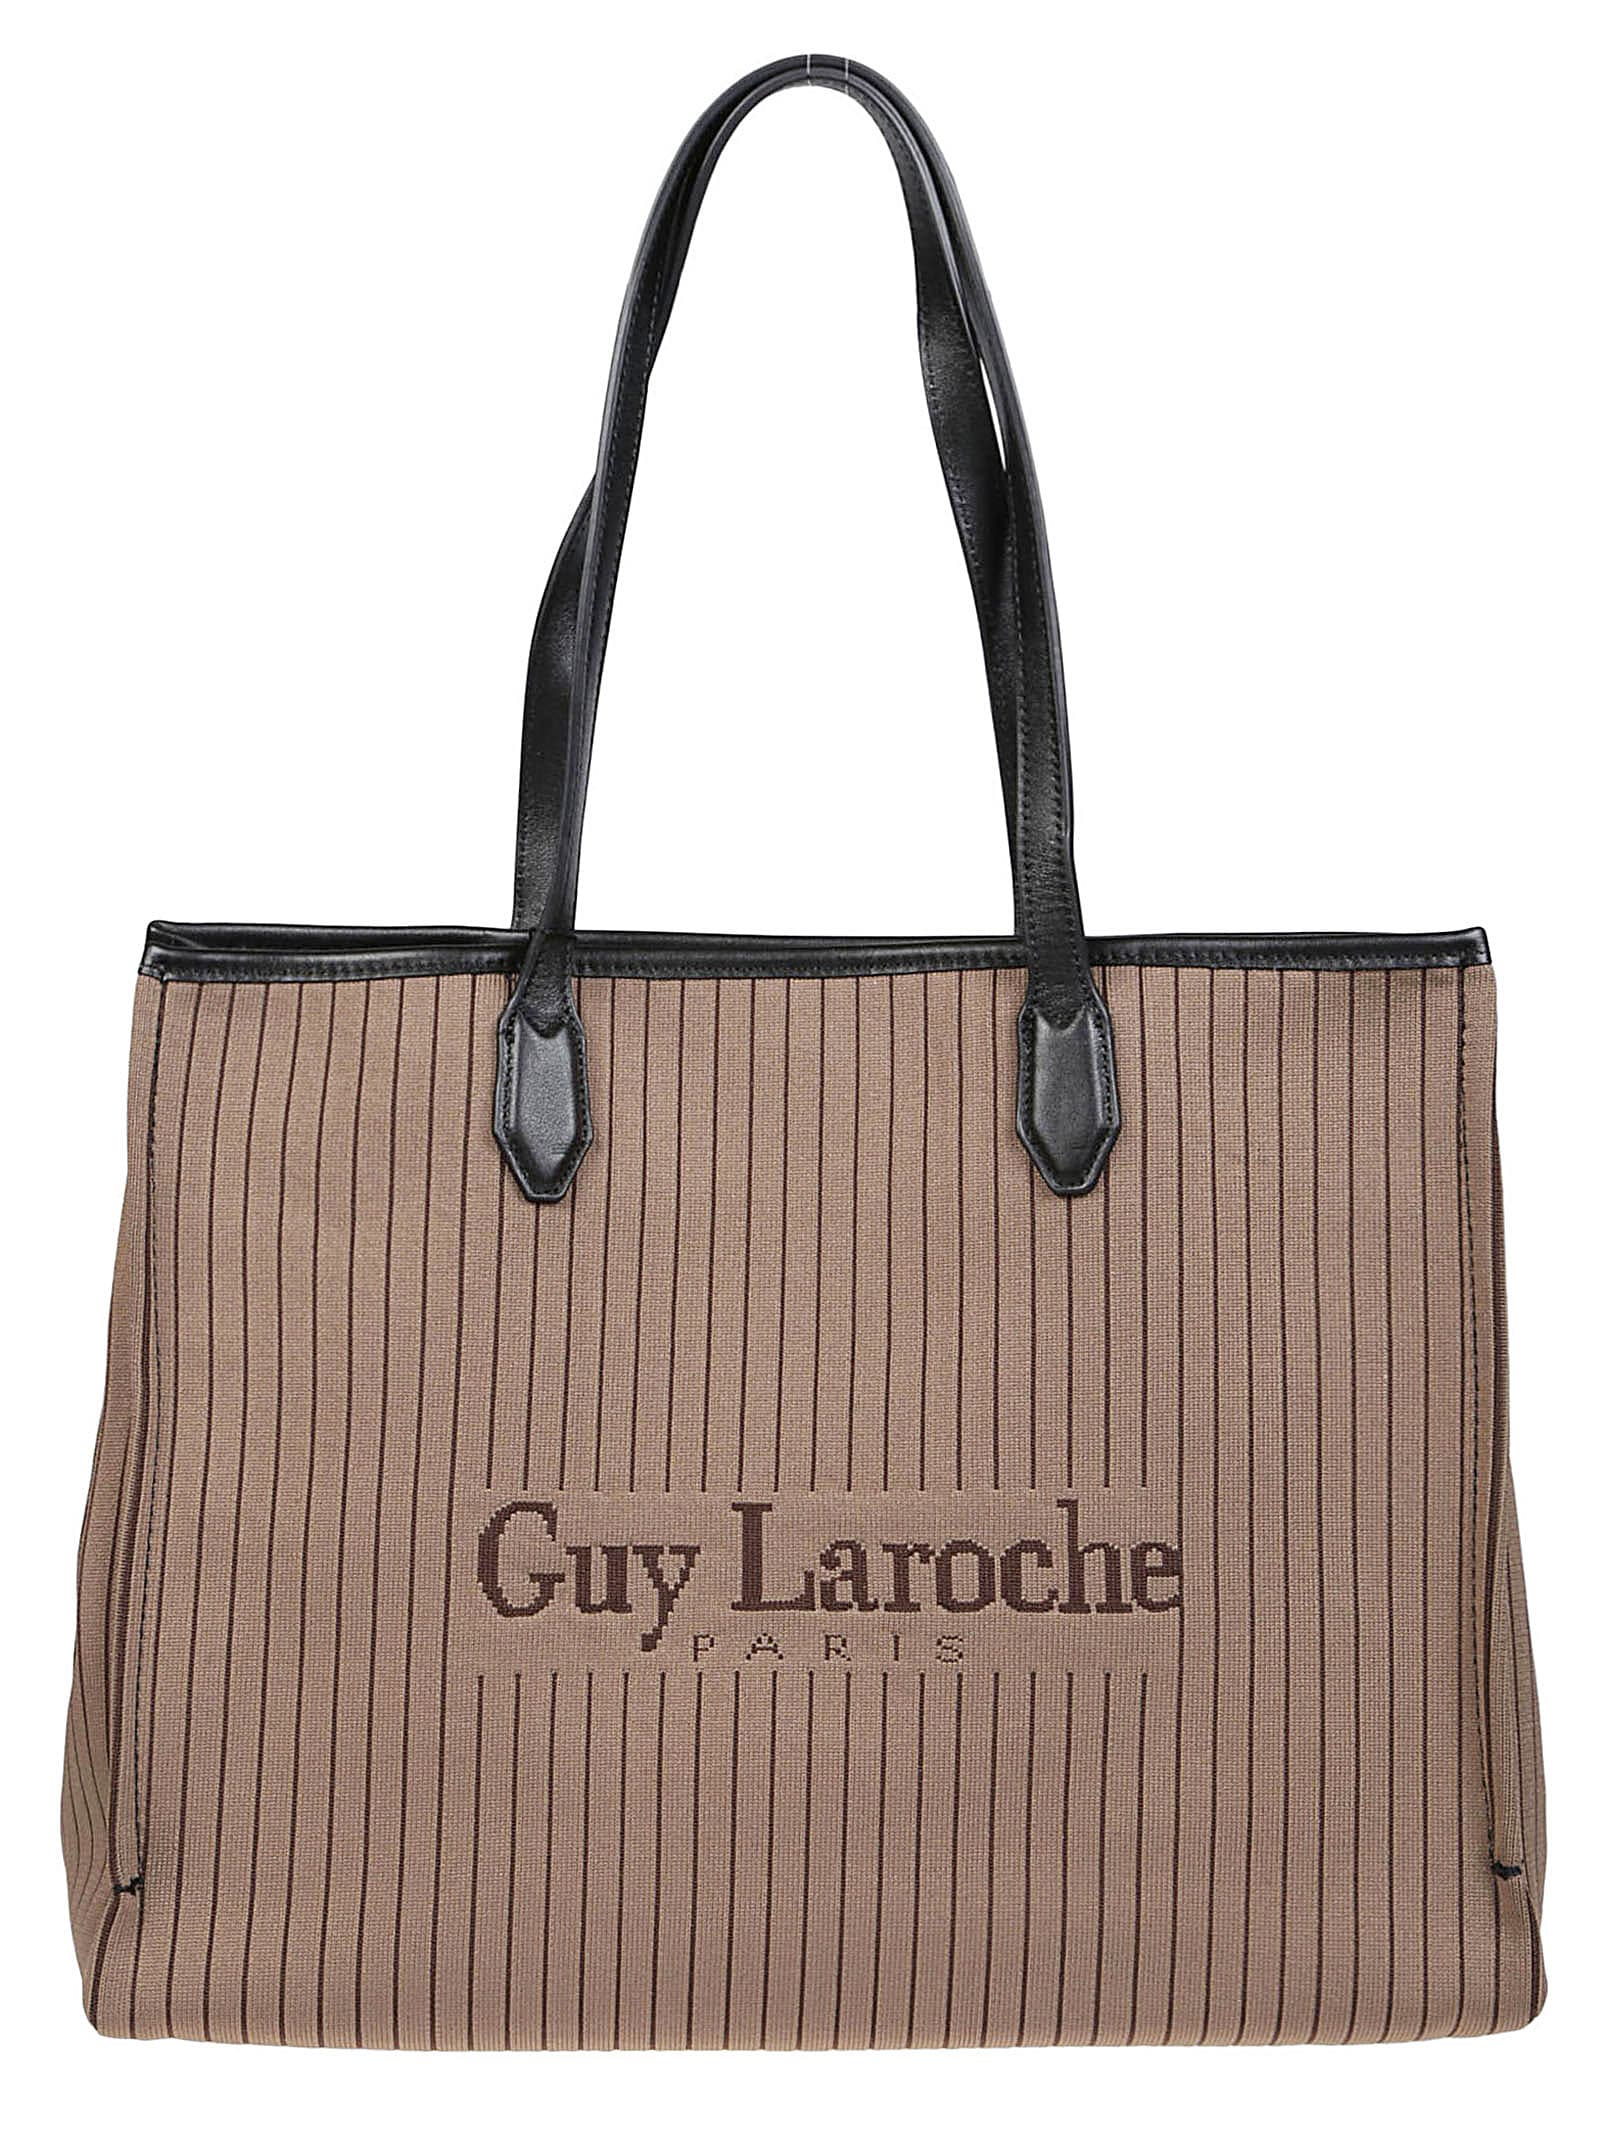 Guy Laroche Small Tote Bag